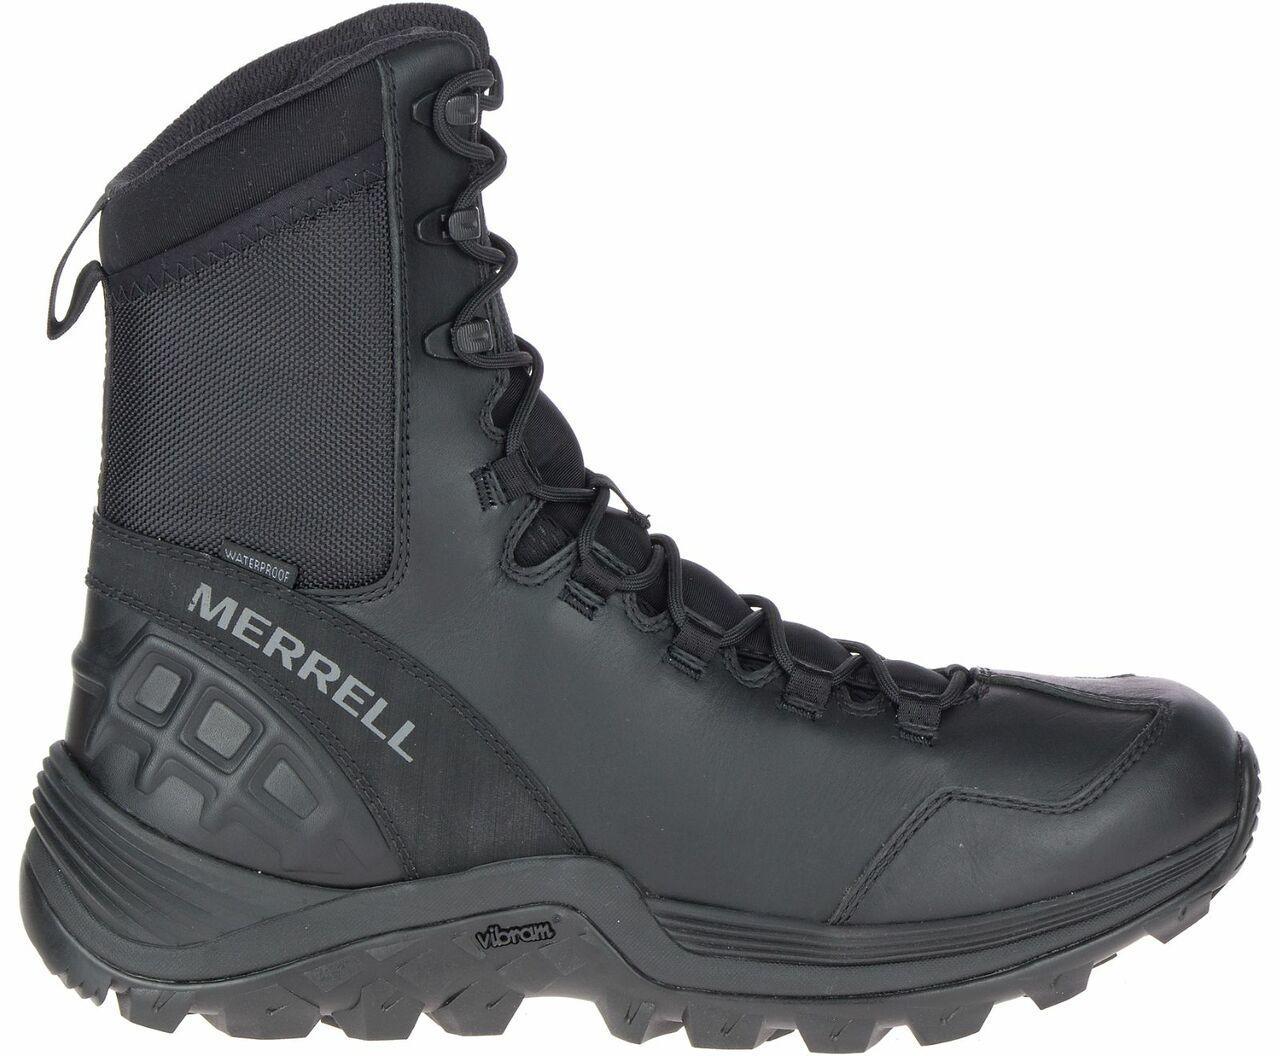 Merrell 8" Tactical Boot Black